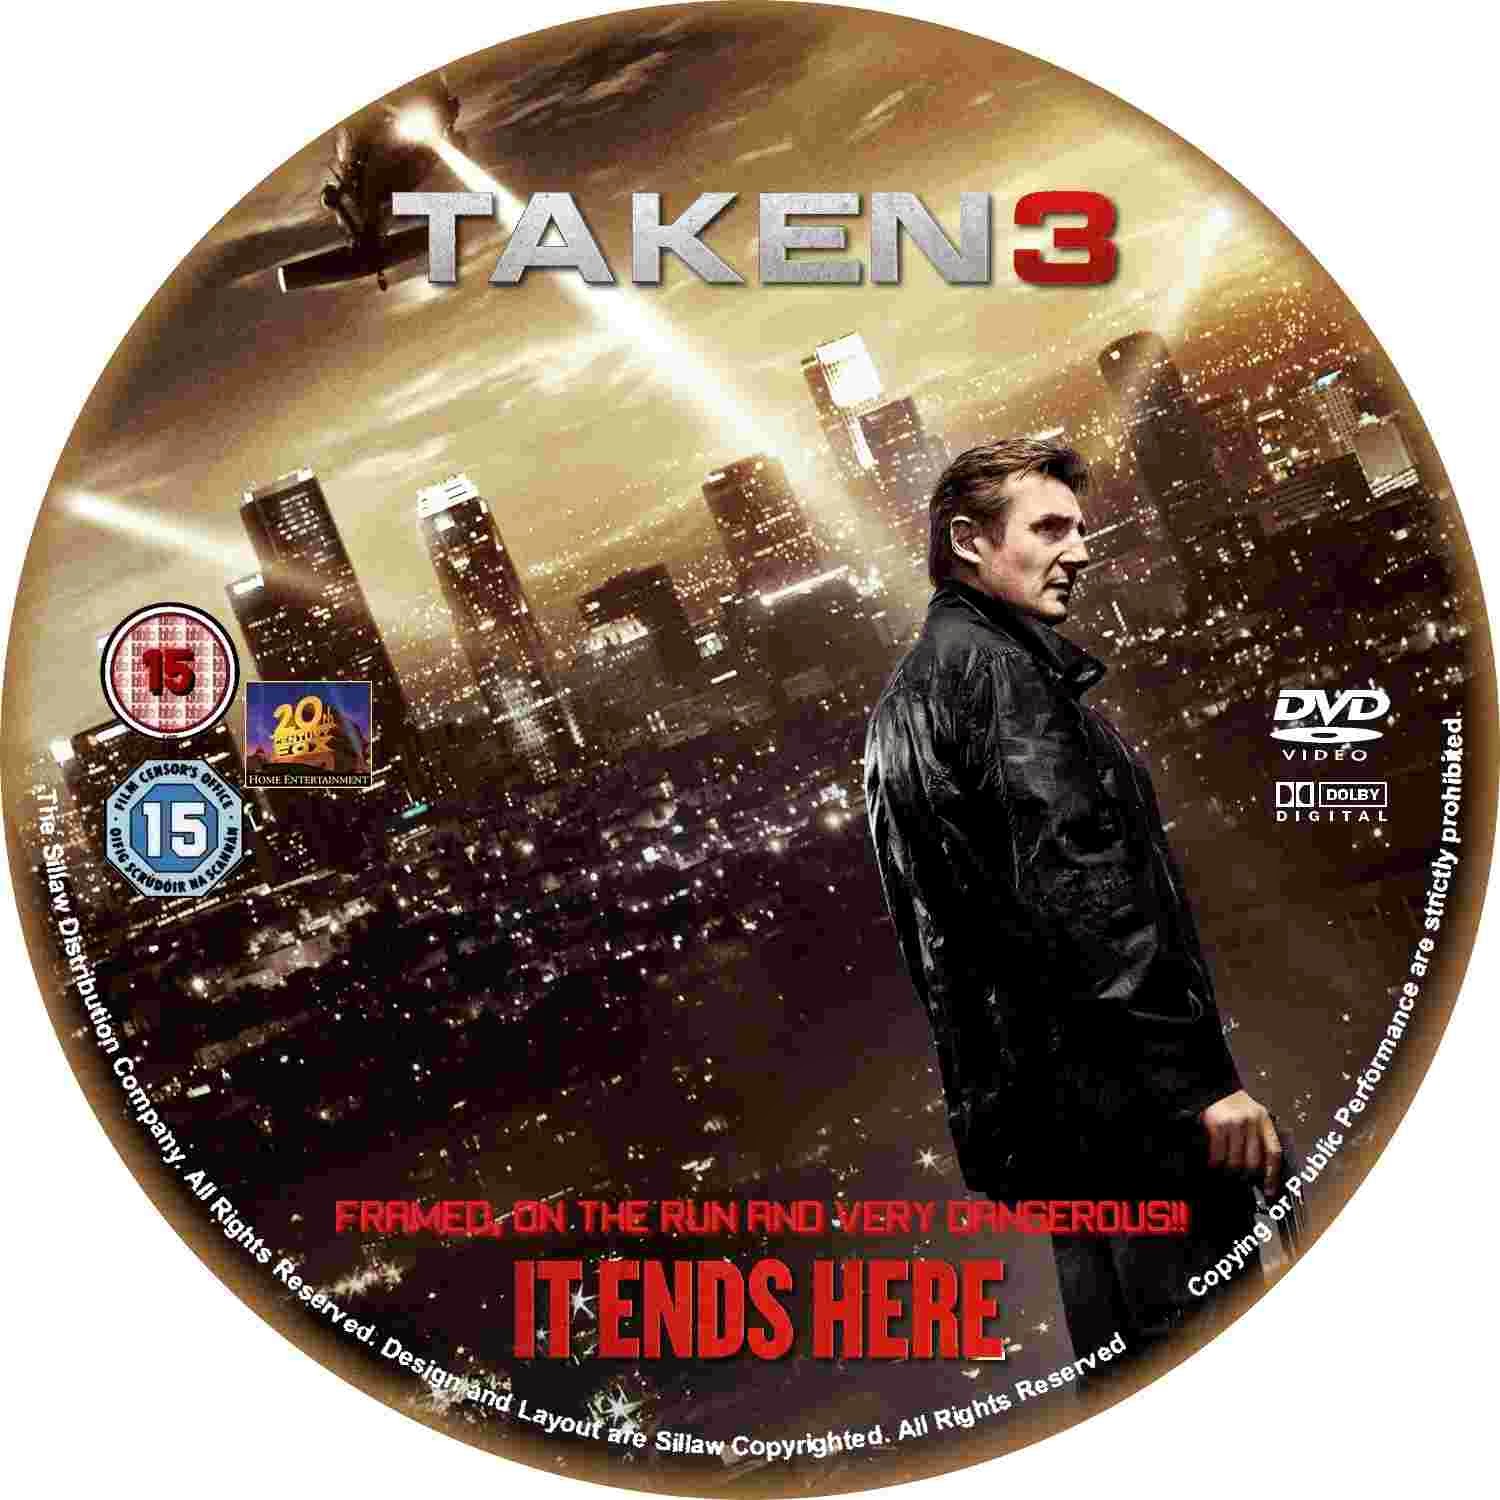 Taken 3 (2015) - DVD Label Cover Movie